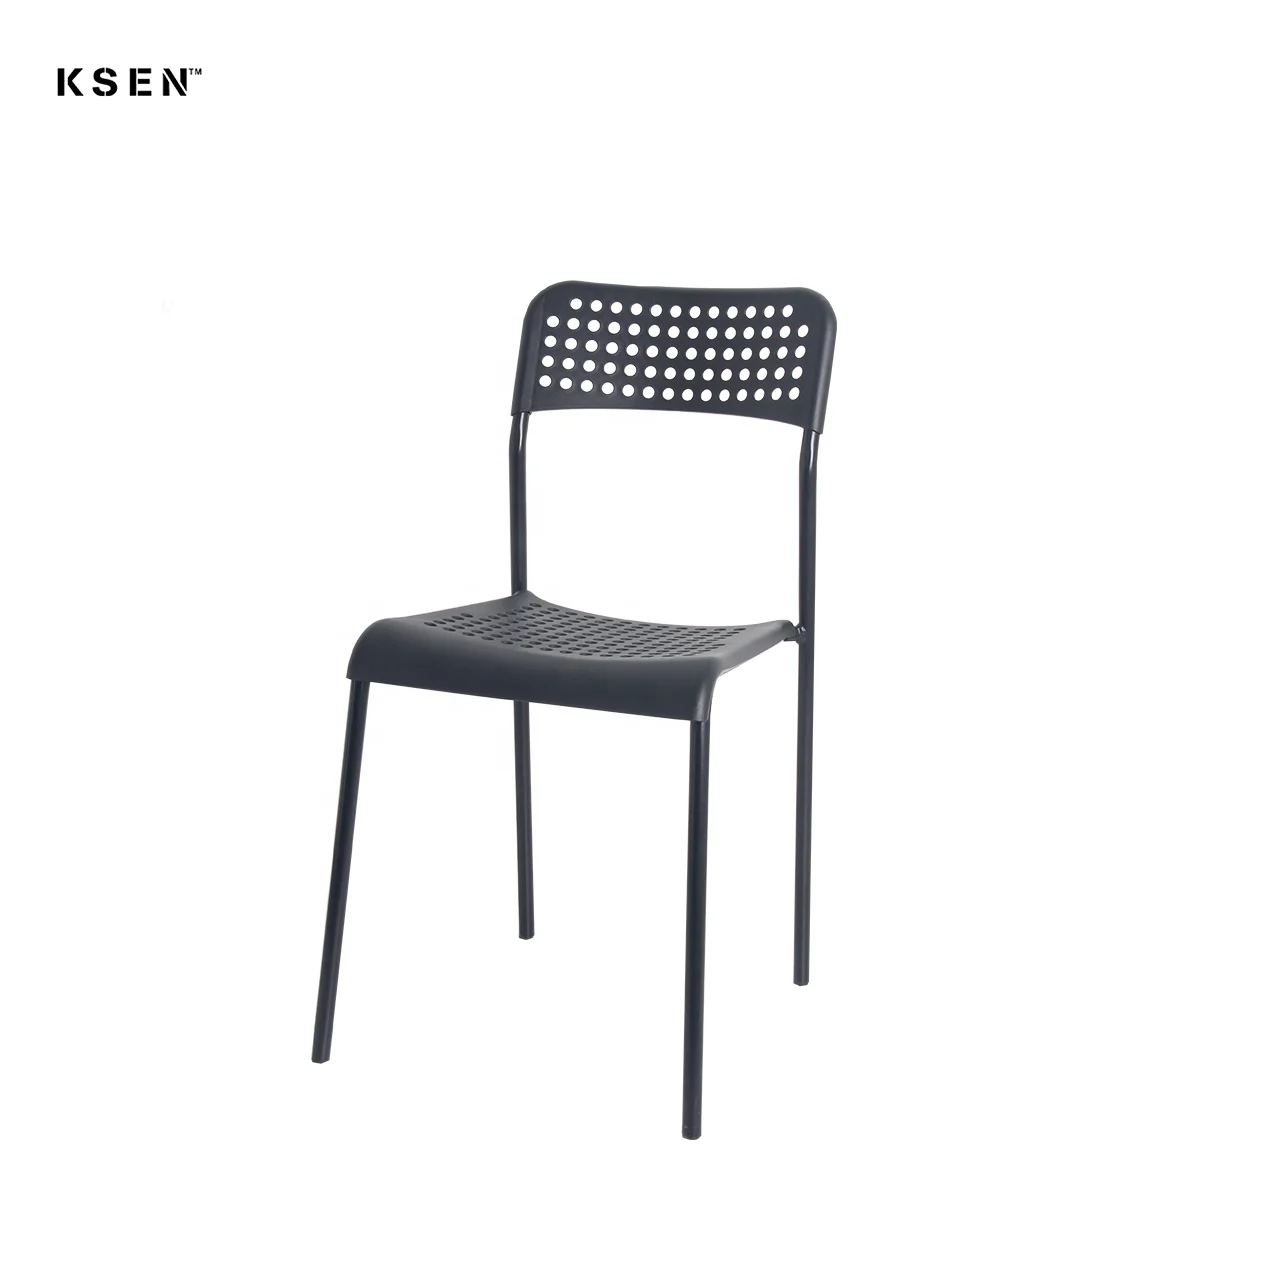 Современный дизайн, белый/черный цвет, стулья для столовой, ресторана C0357